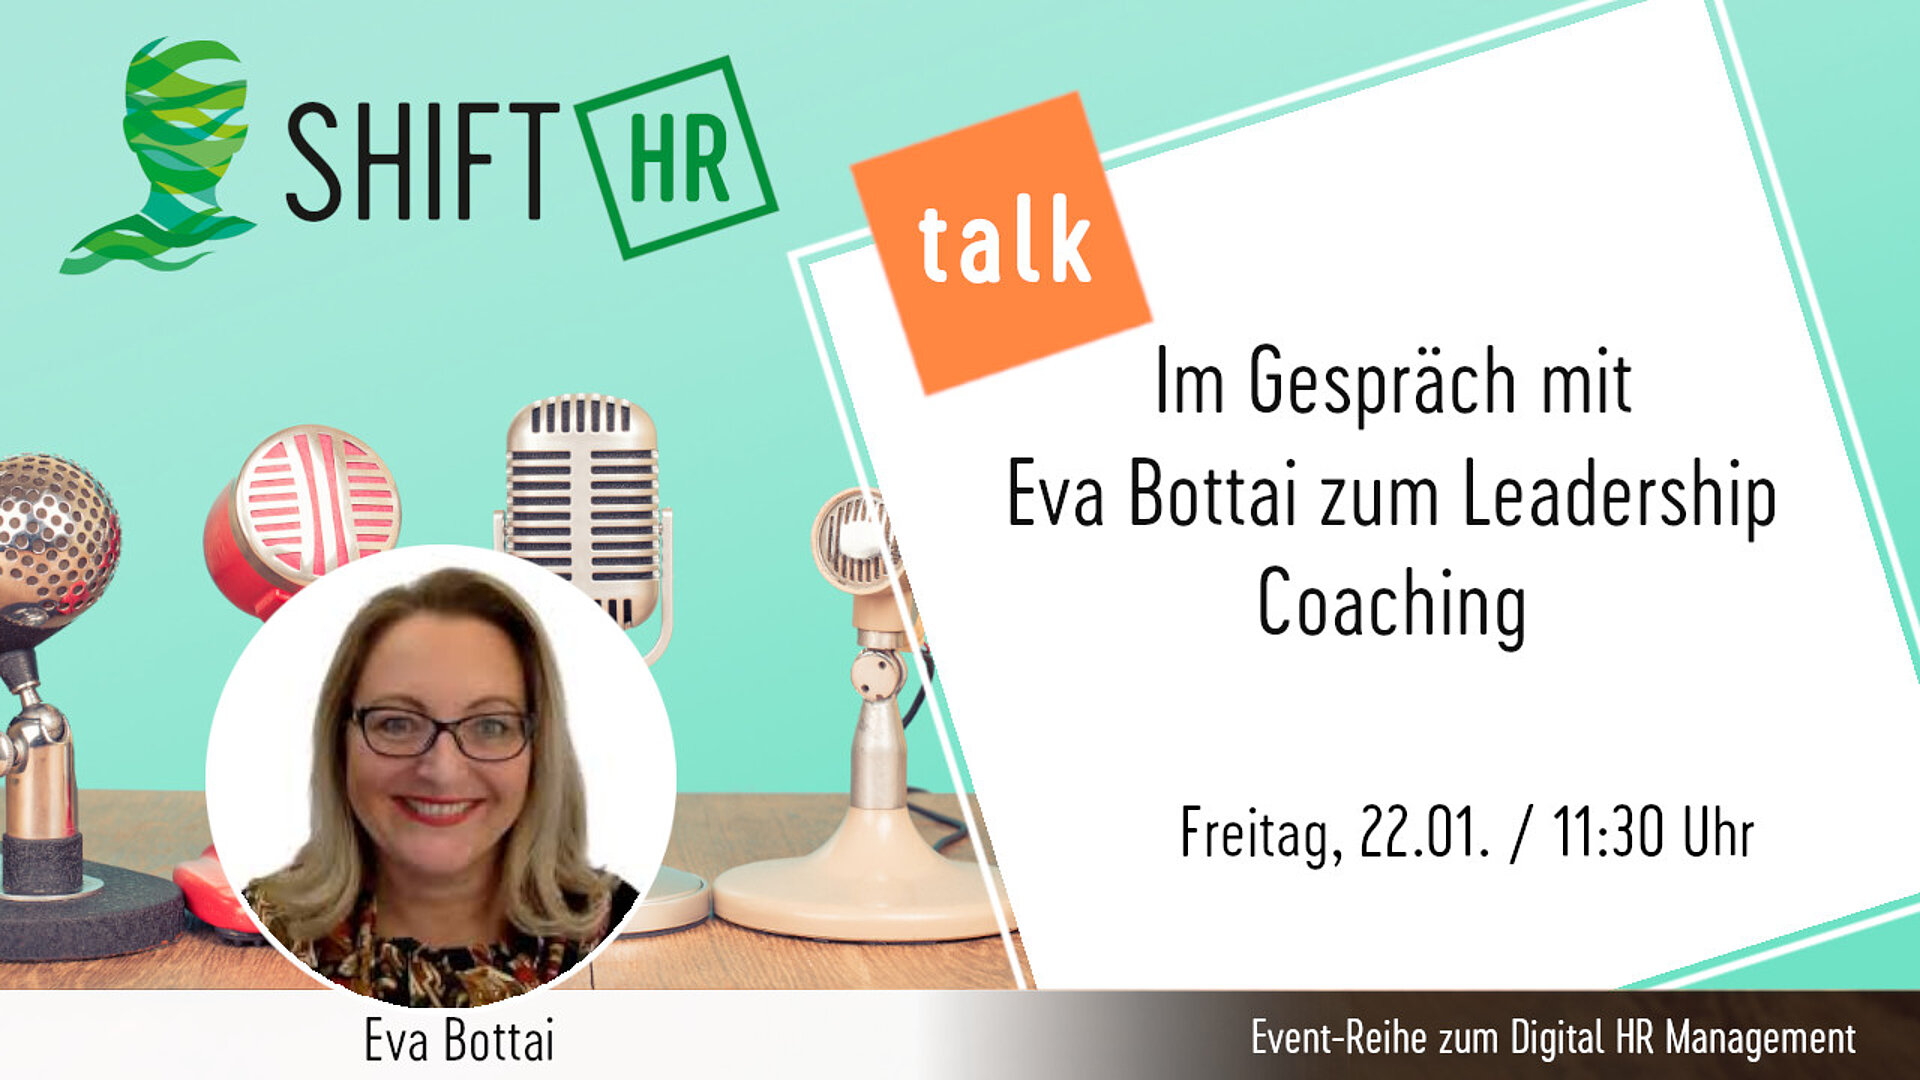 Im Gespräch mit Eva Bottai zum Leadership Coaching